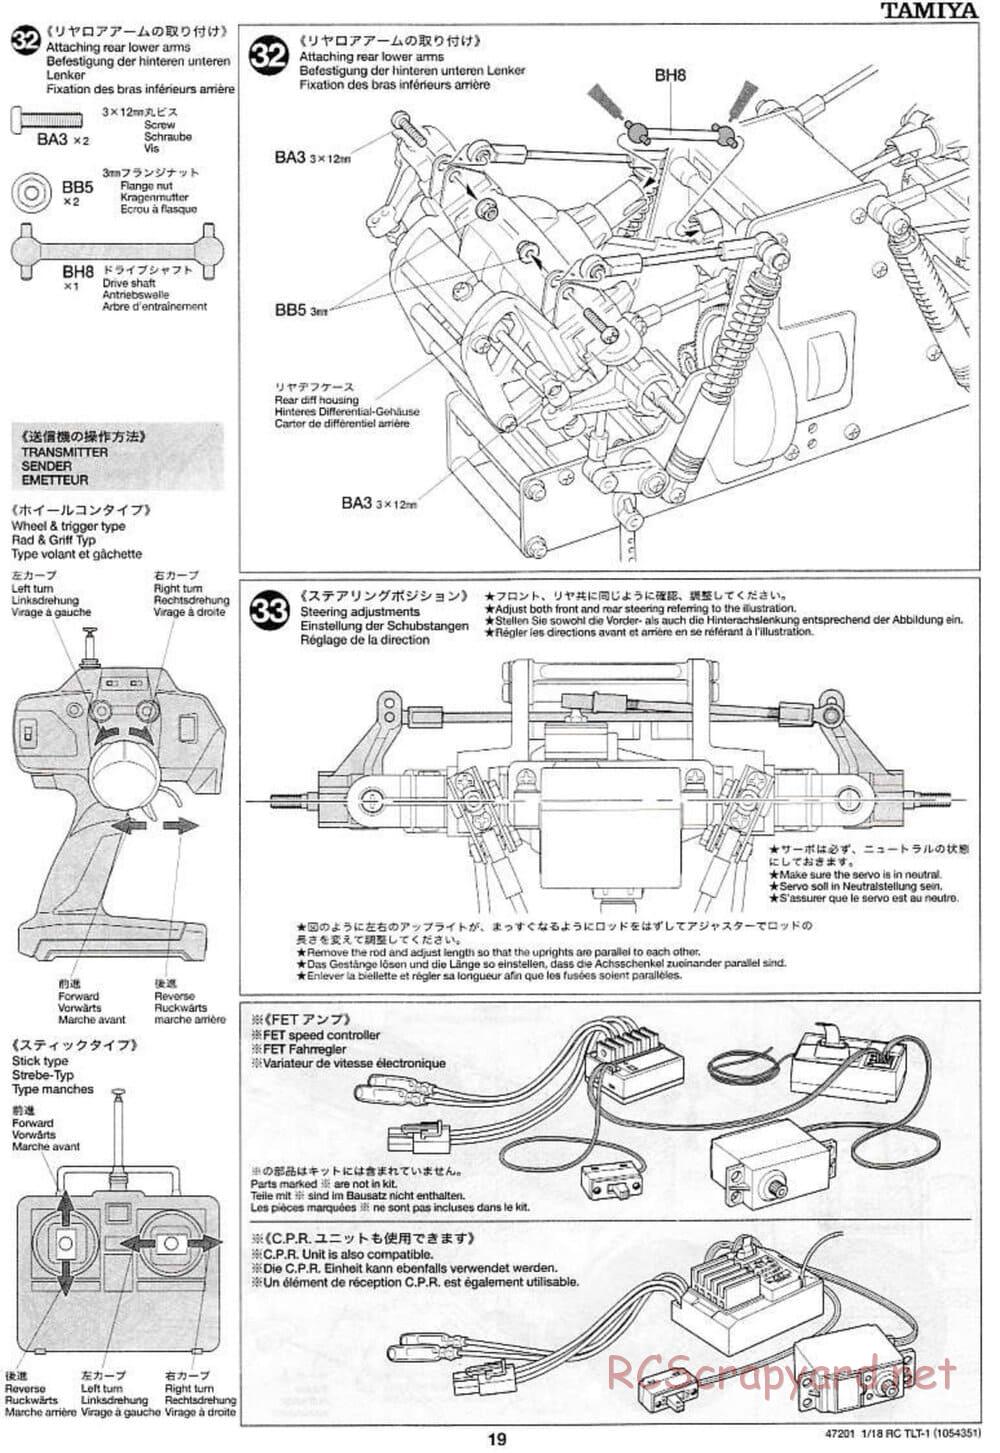 Tamiya - Rock Buster - TLT-1 Chassis - Manual - Page 19